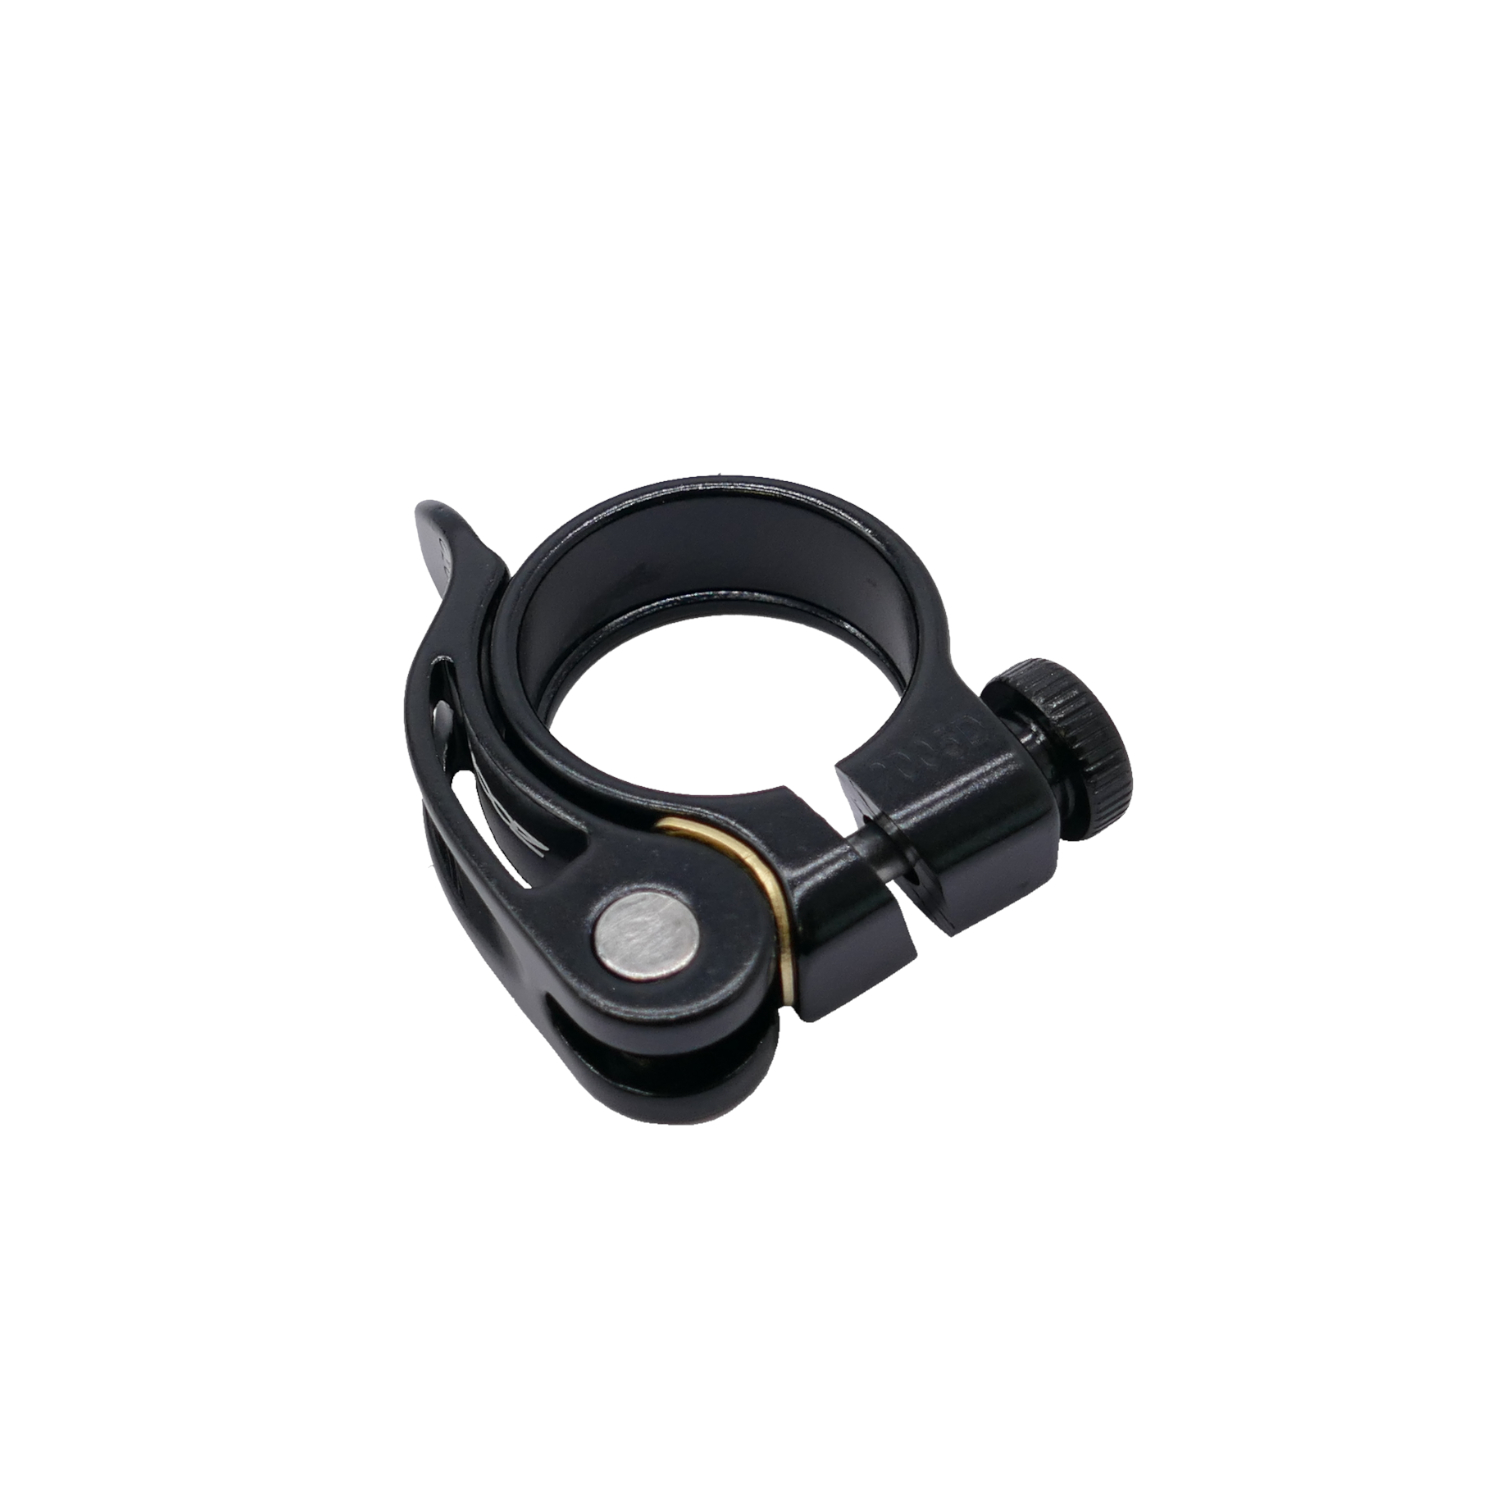 Sattelklemme ZOOM QR mit Schnellspanner, 31,8 mm in schwarz aus ALU